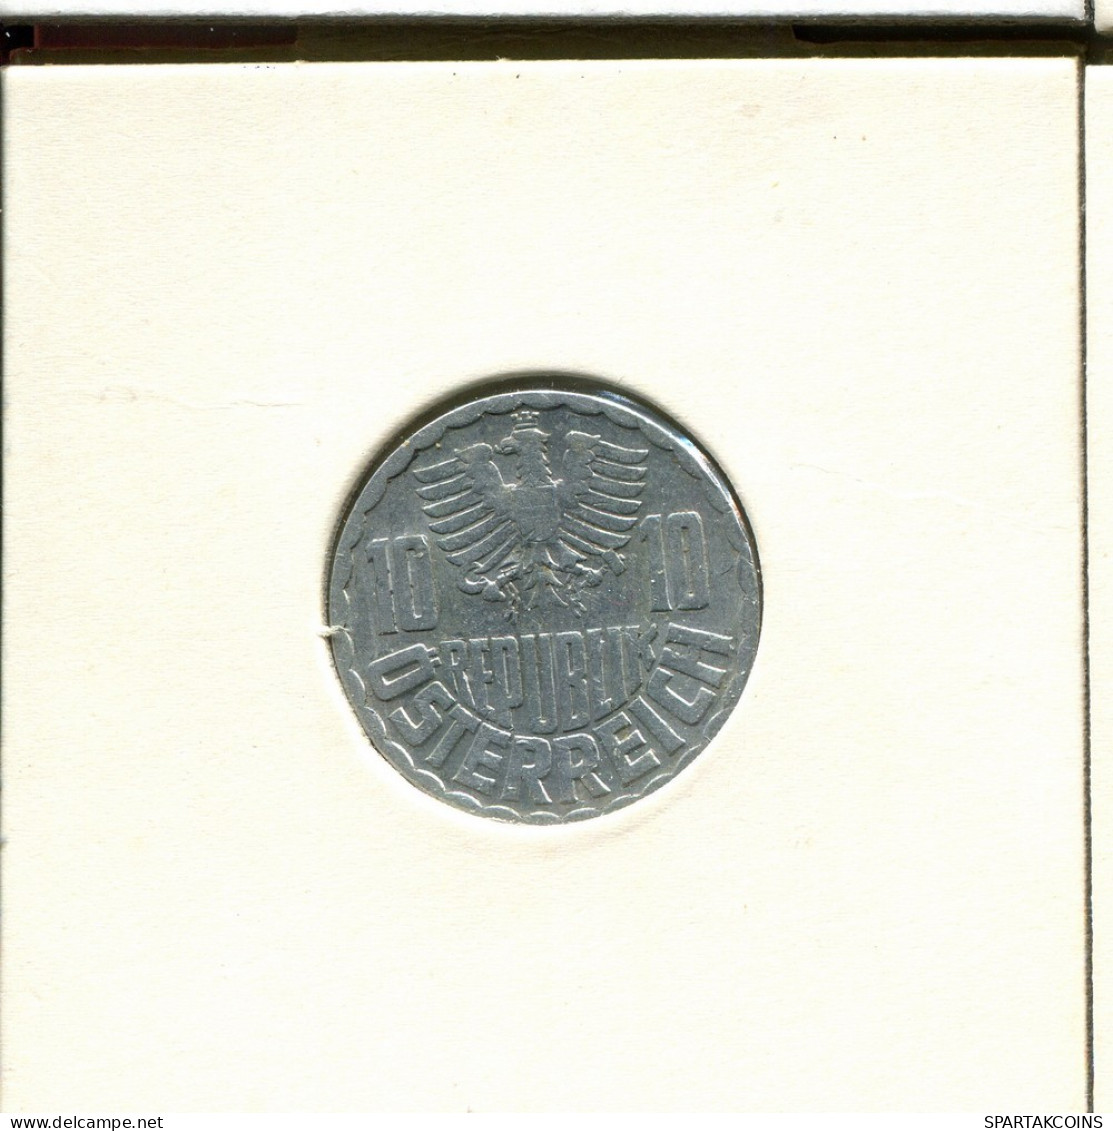 10 GROSCHEN 1965 AUSTRIA Coin #AV029.U.A - Oesterreich